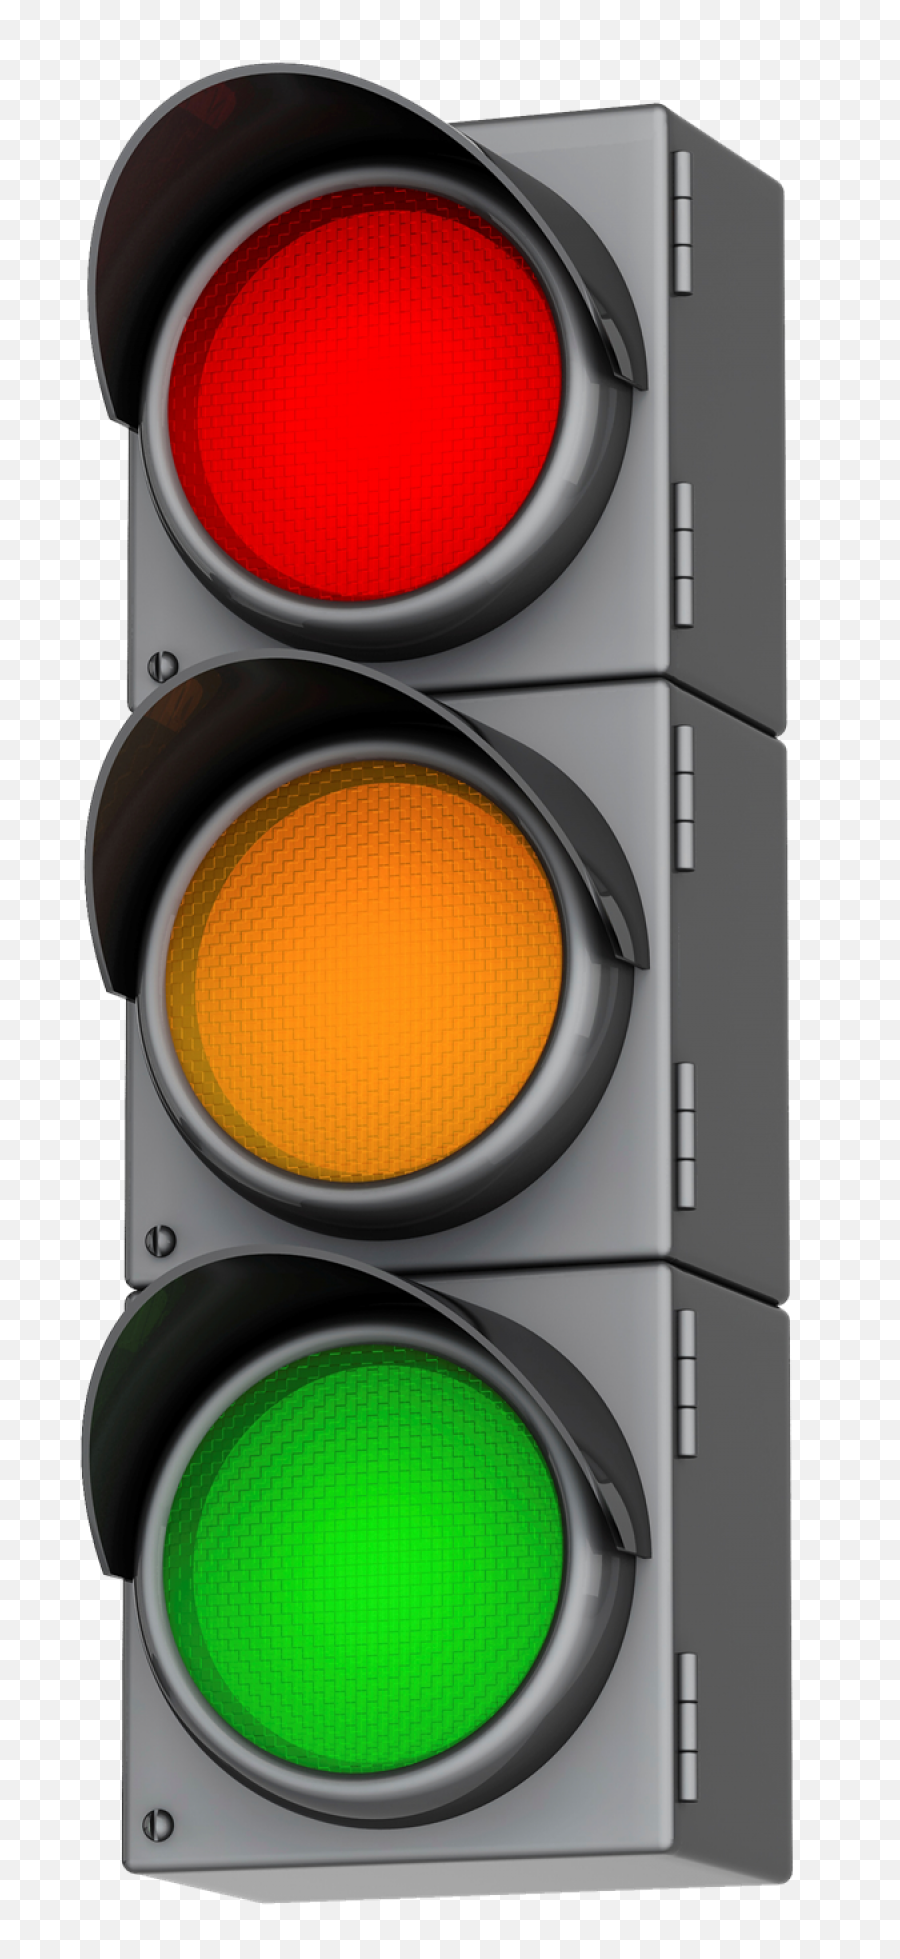 Traffic Light Png Images Transparent Lights Pngs 6 - Cartoon Picture Of Traffic Lights,Lights Png